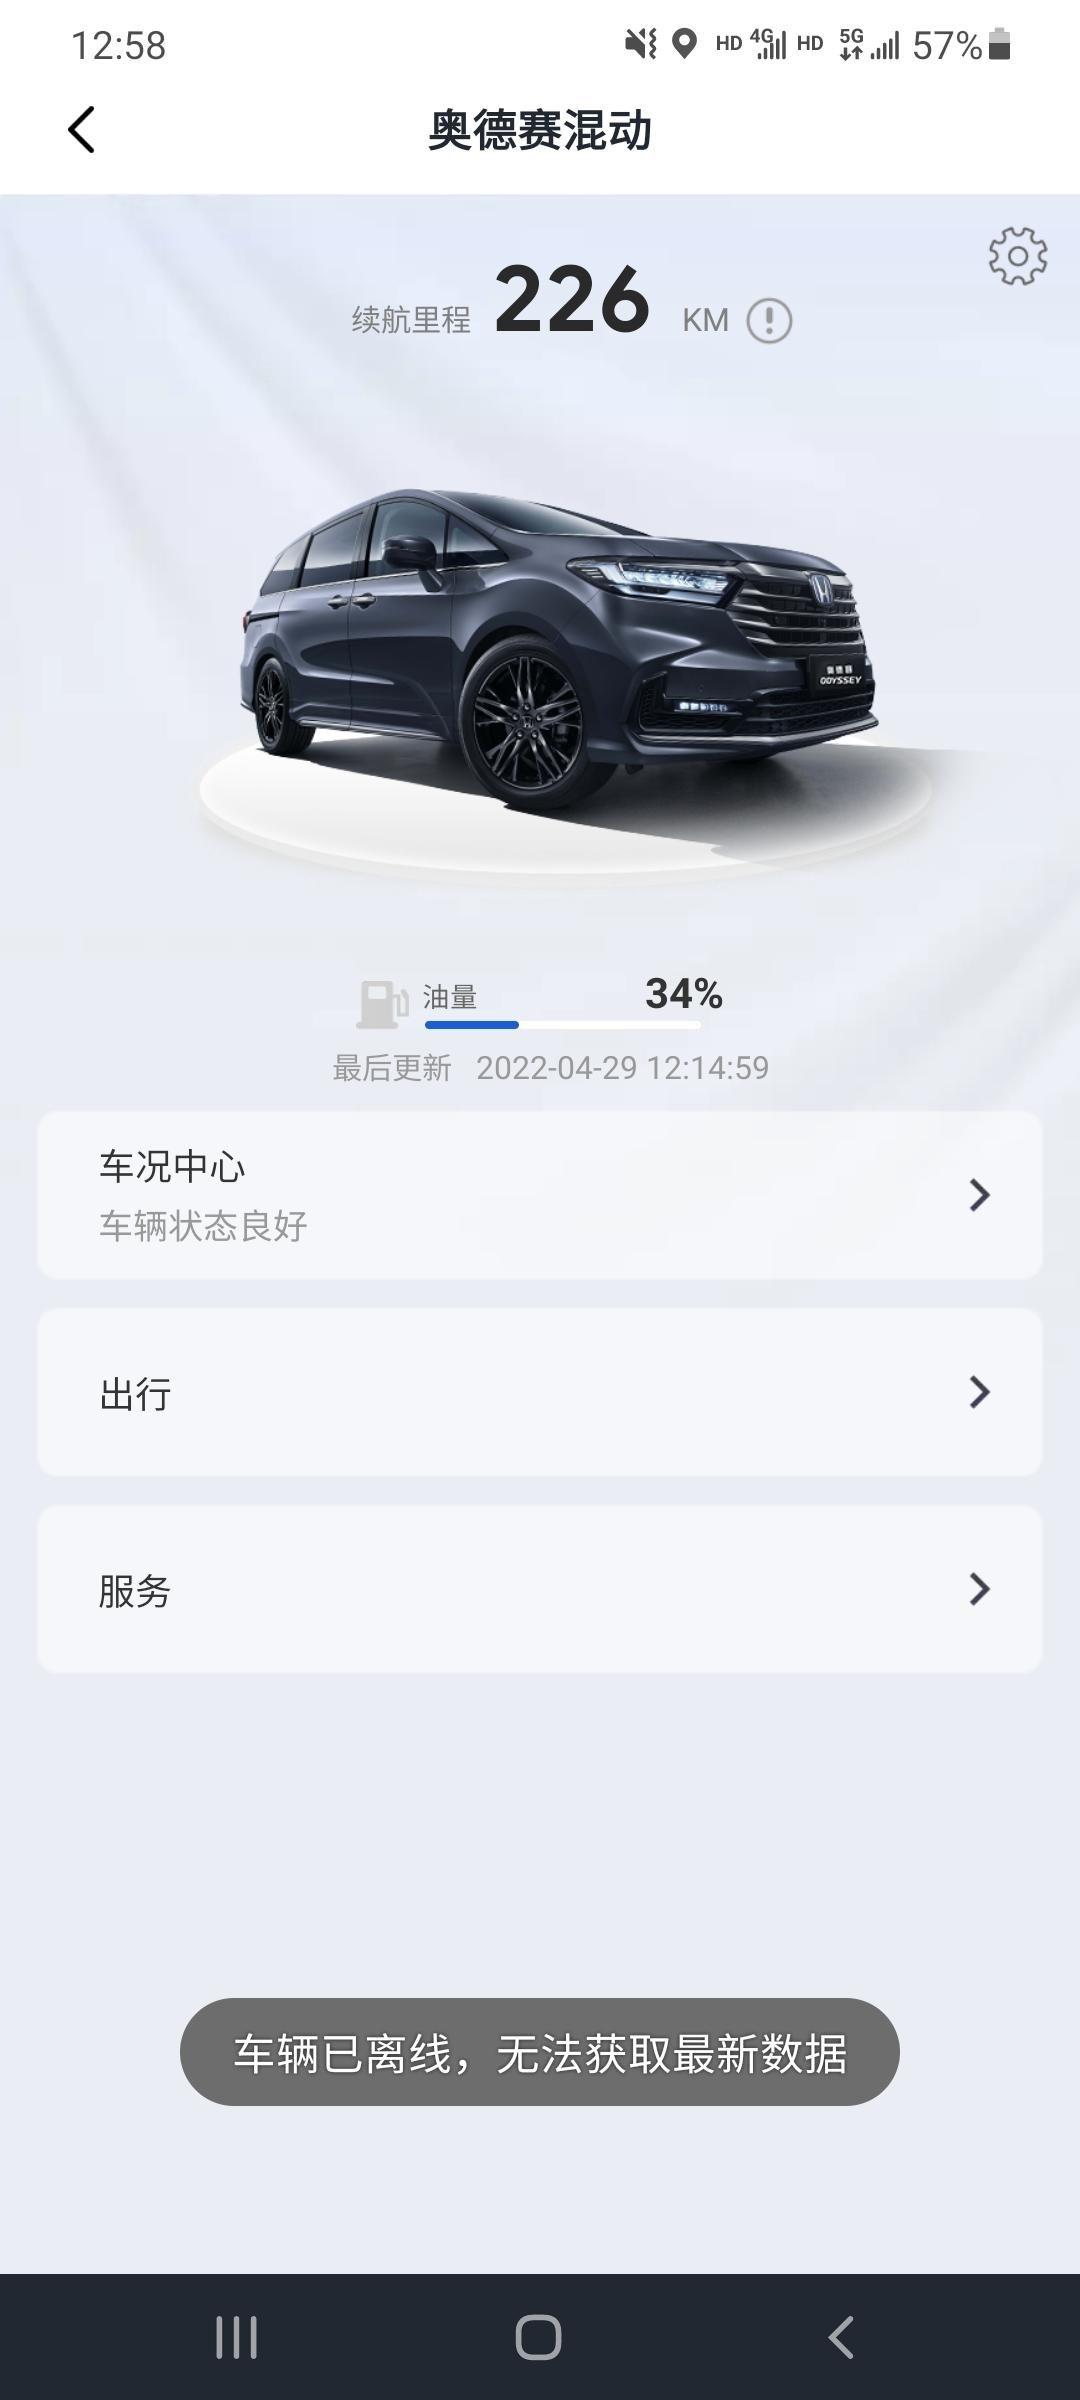 本田奥德赛 广汽本田app爱车模块，总是显示离线状态，没有锁车什么的功能，怎么回事